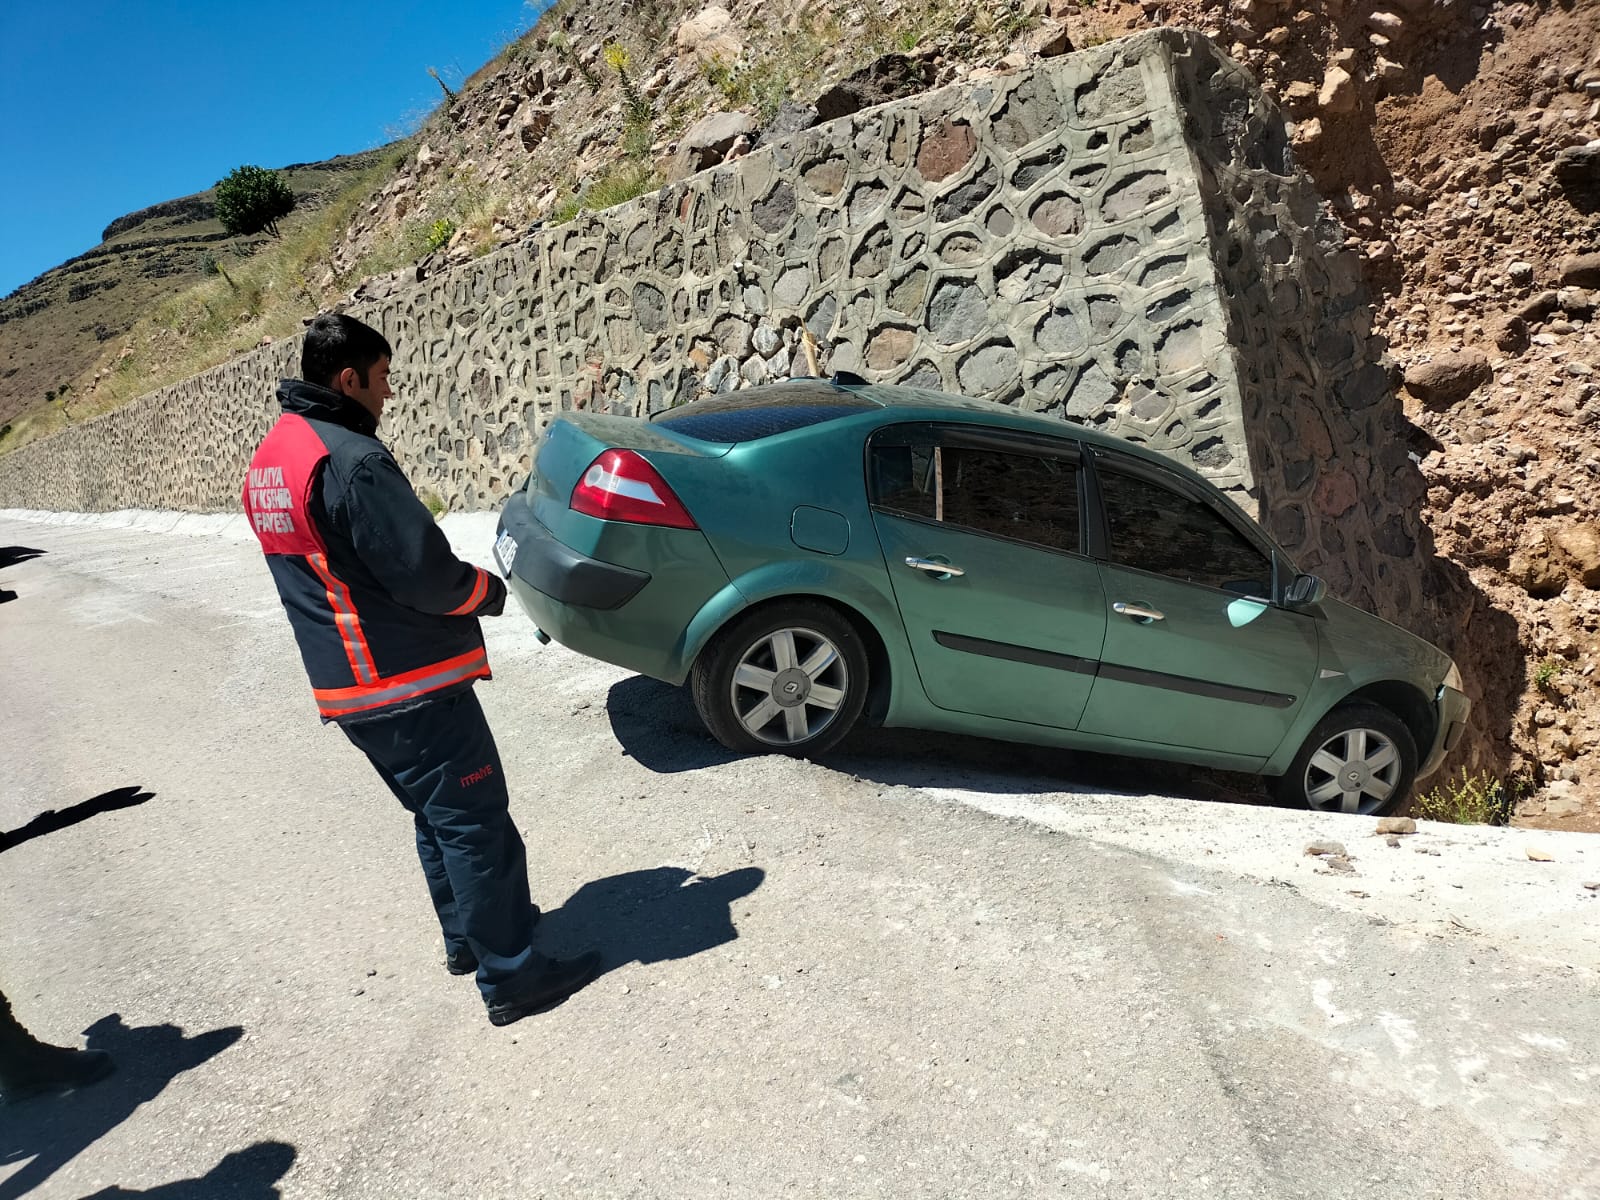 Malatya’da Doğanşehir, Darende ve Kale ilçelerinde meydana gelen 3 ayrı trafik kazasında 4 kişi yaralandı.